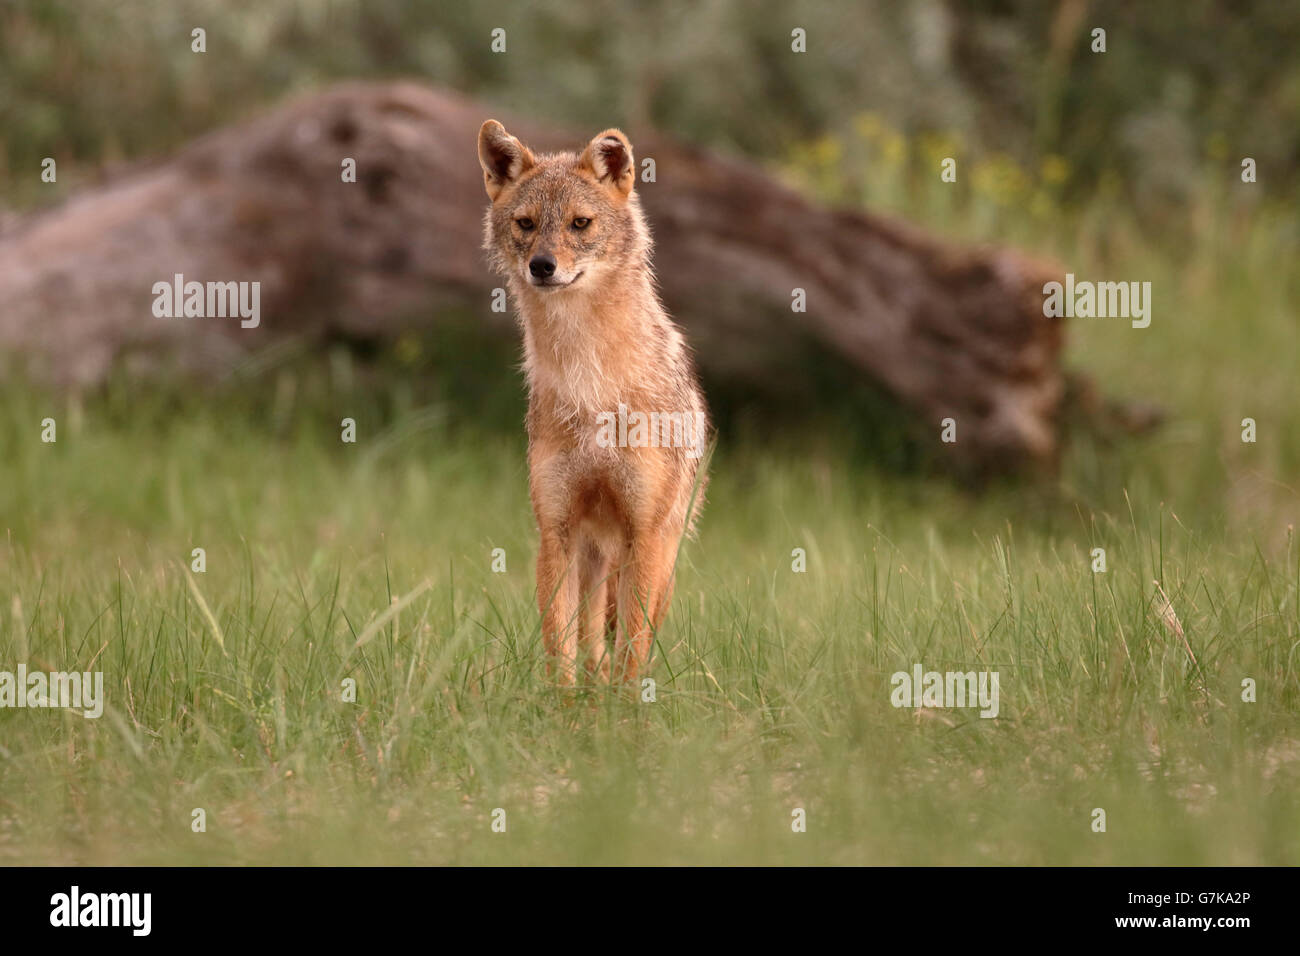 Chacal européen, Canis aureus moreoticus, seul mammifère de l'herbe, Roumanie, Juin 2016 Banque D'Images